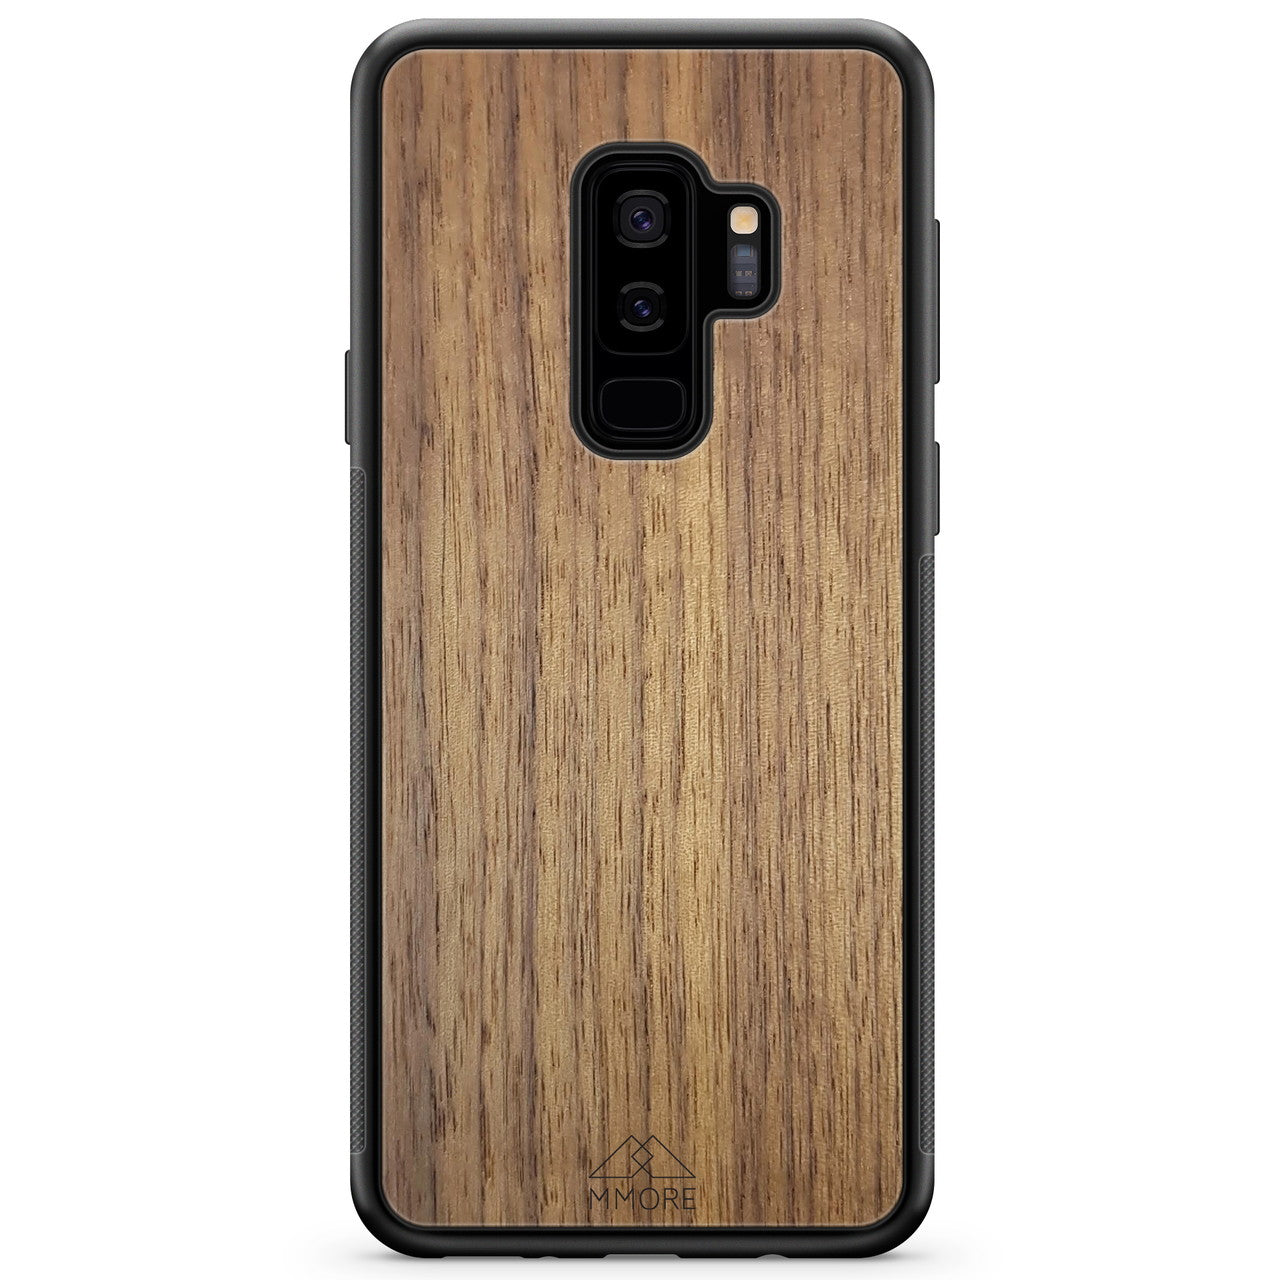 Capa de telefone americana em nogueira para Samsung S9 Plus em madeira